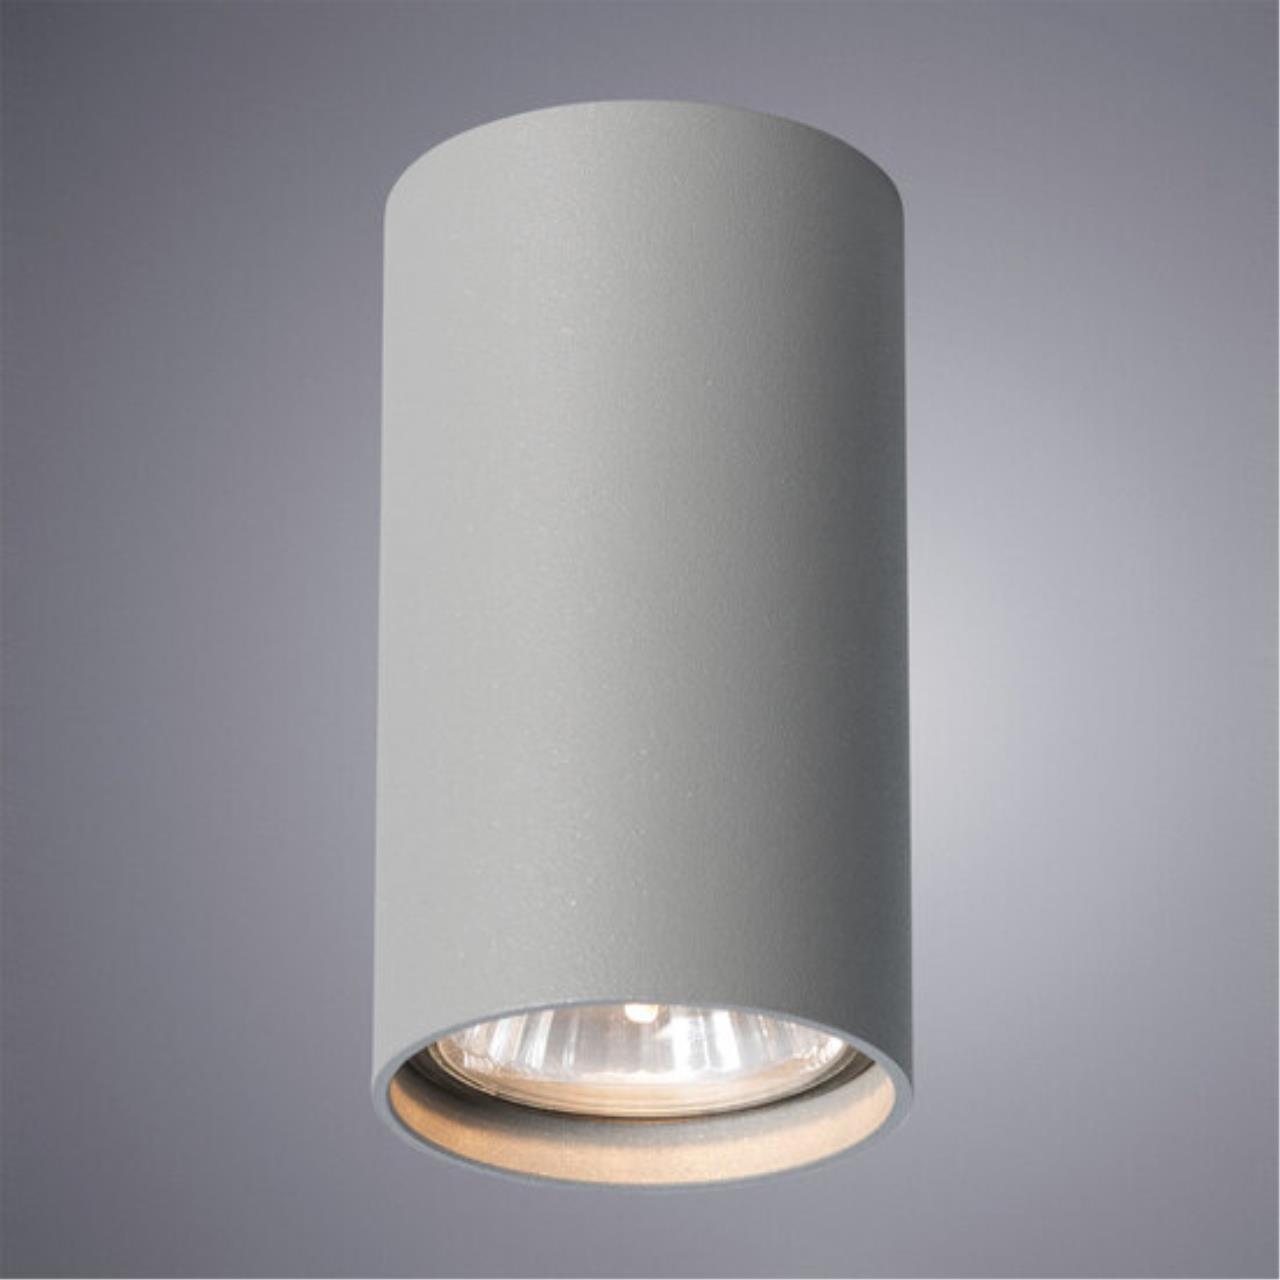 Накладной светильник Arte lamp A1516PL-1GY